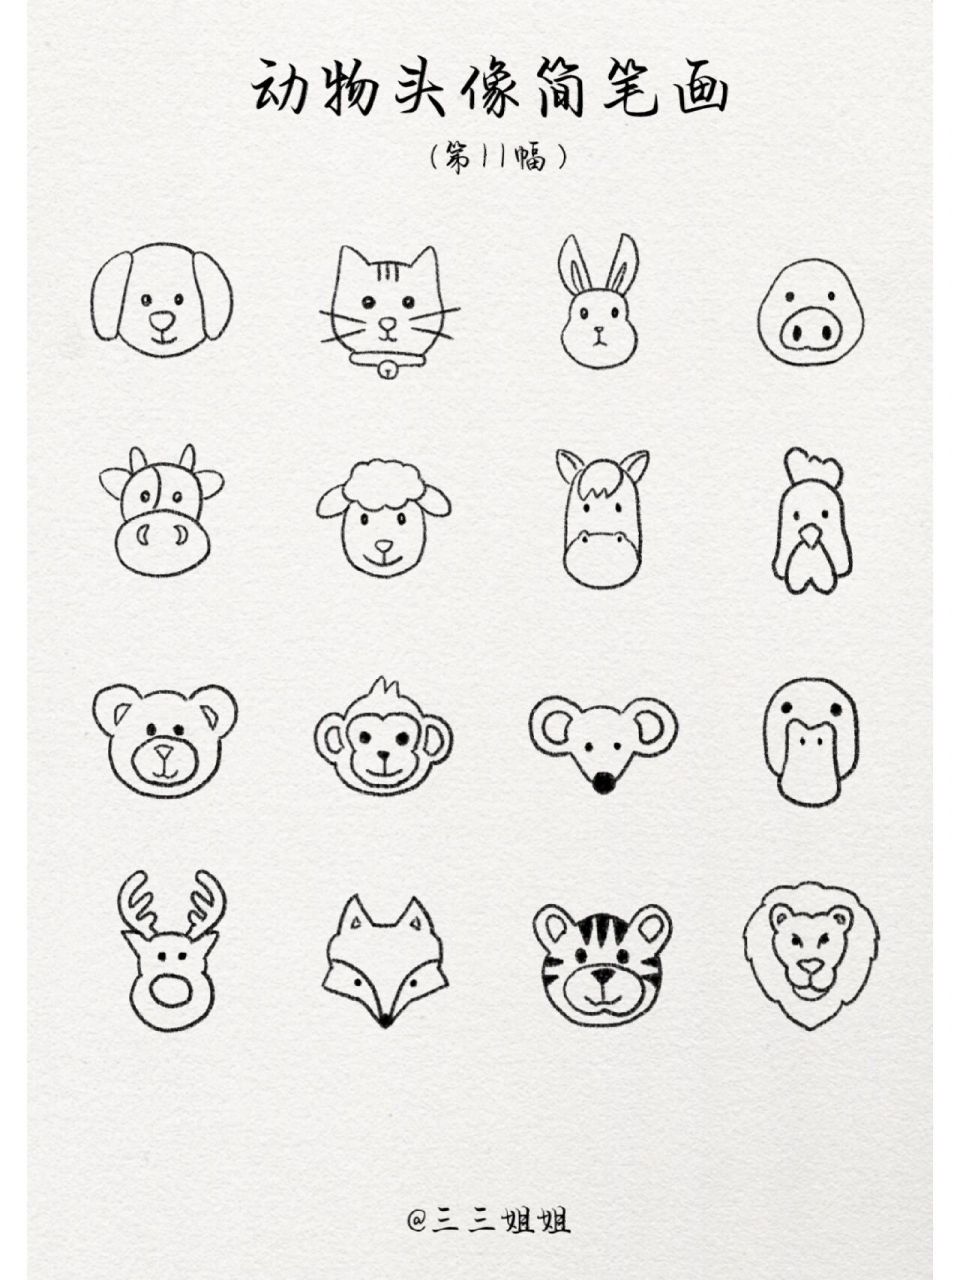 二十个动物头简笔画图片